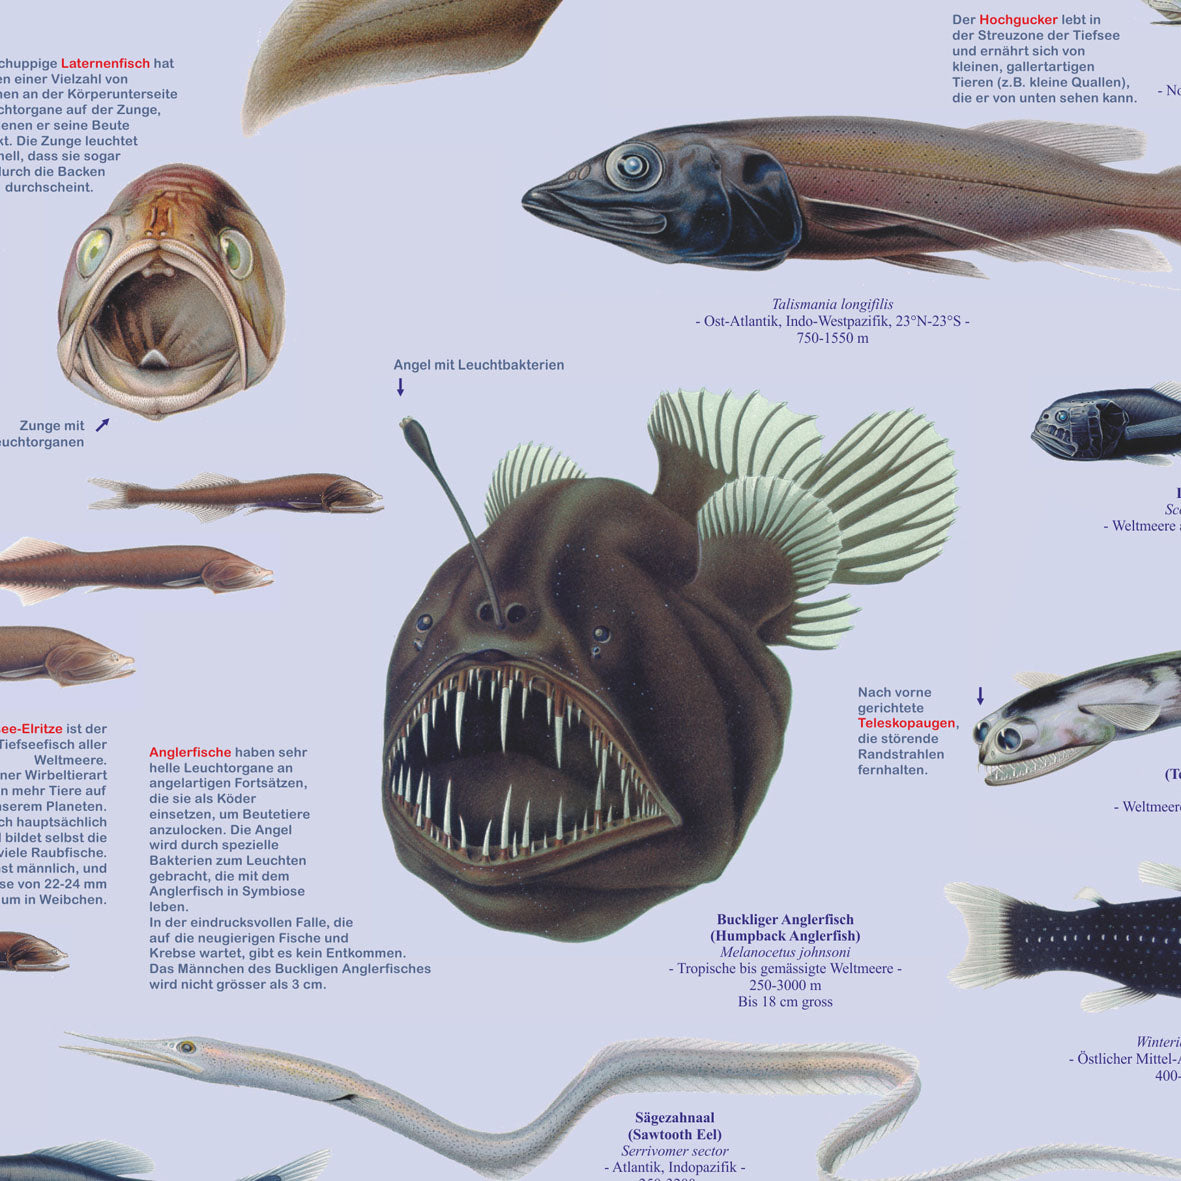 Poster "Fische der Tiefsee"